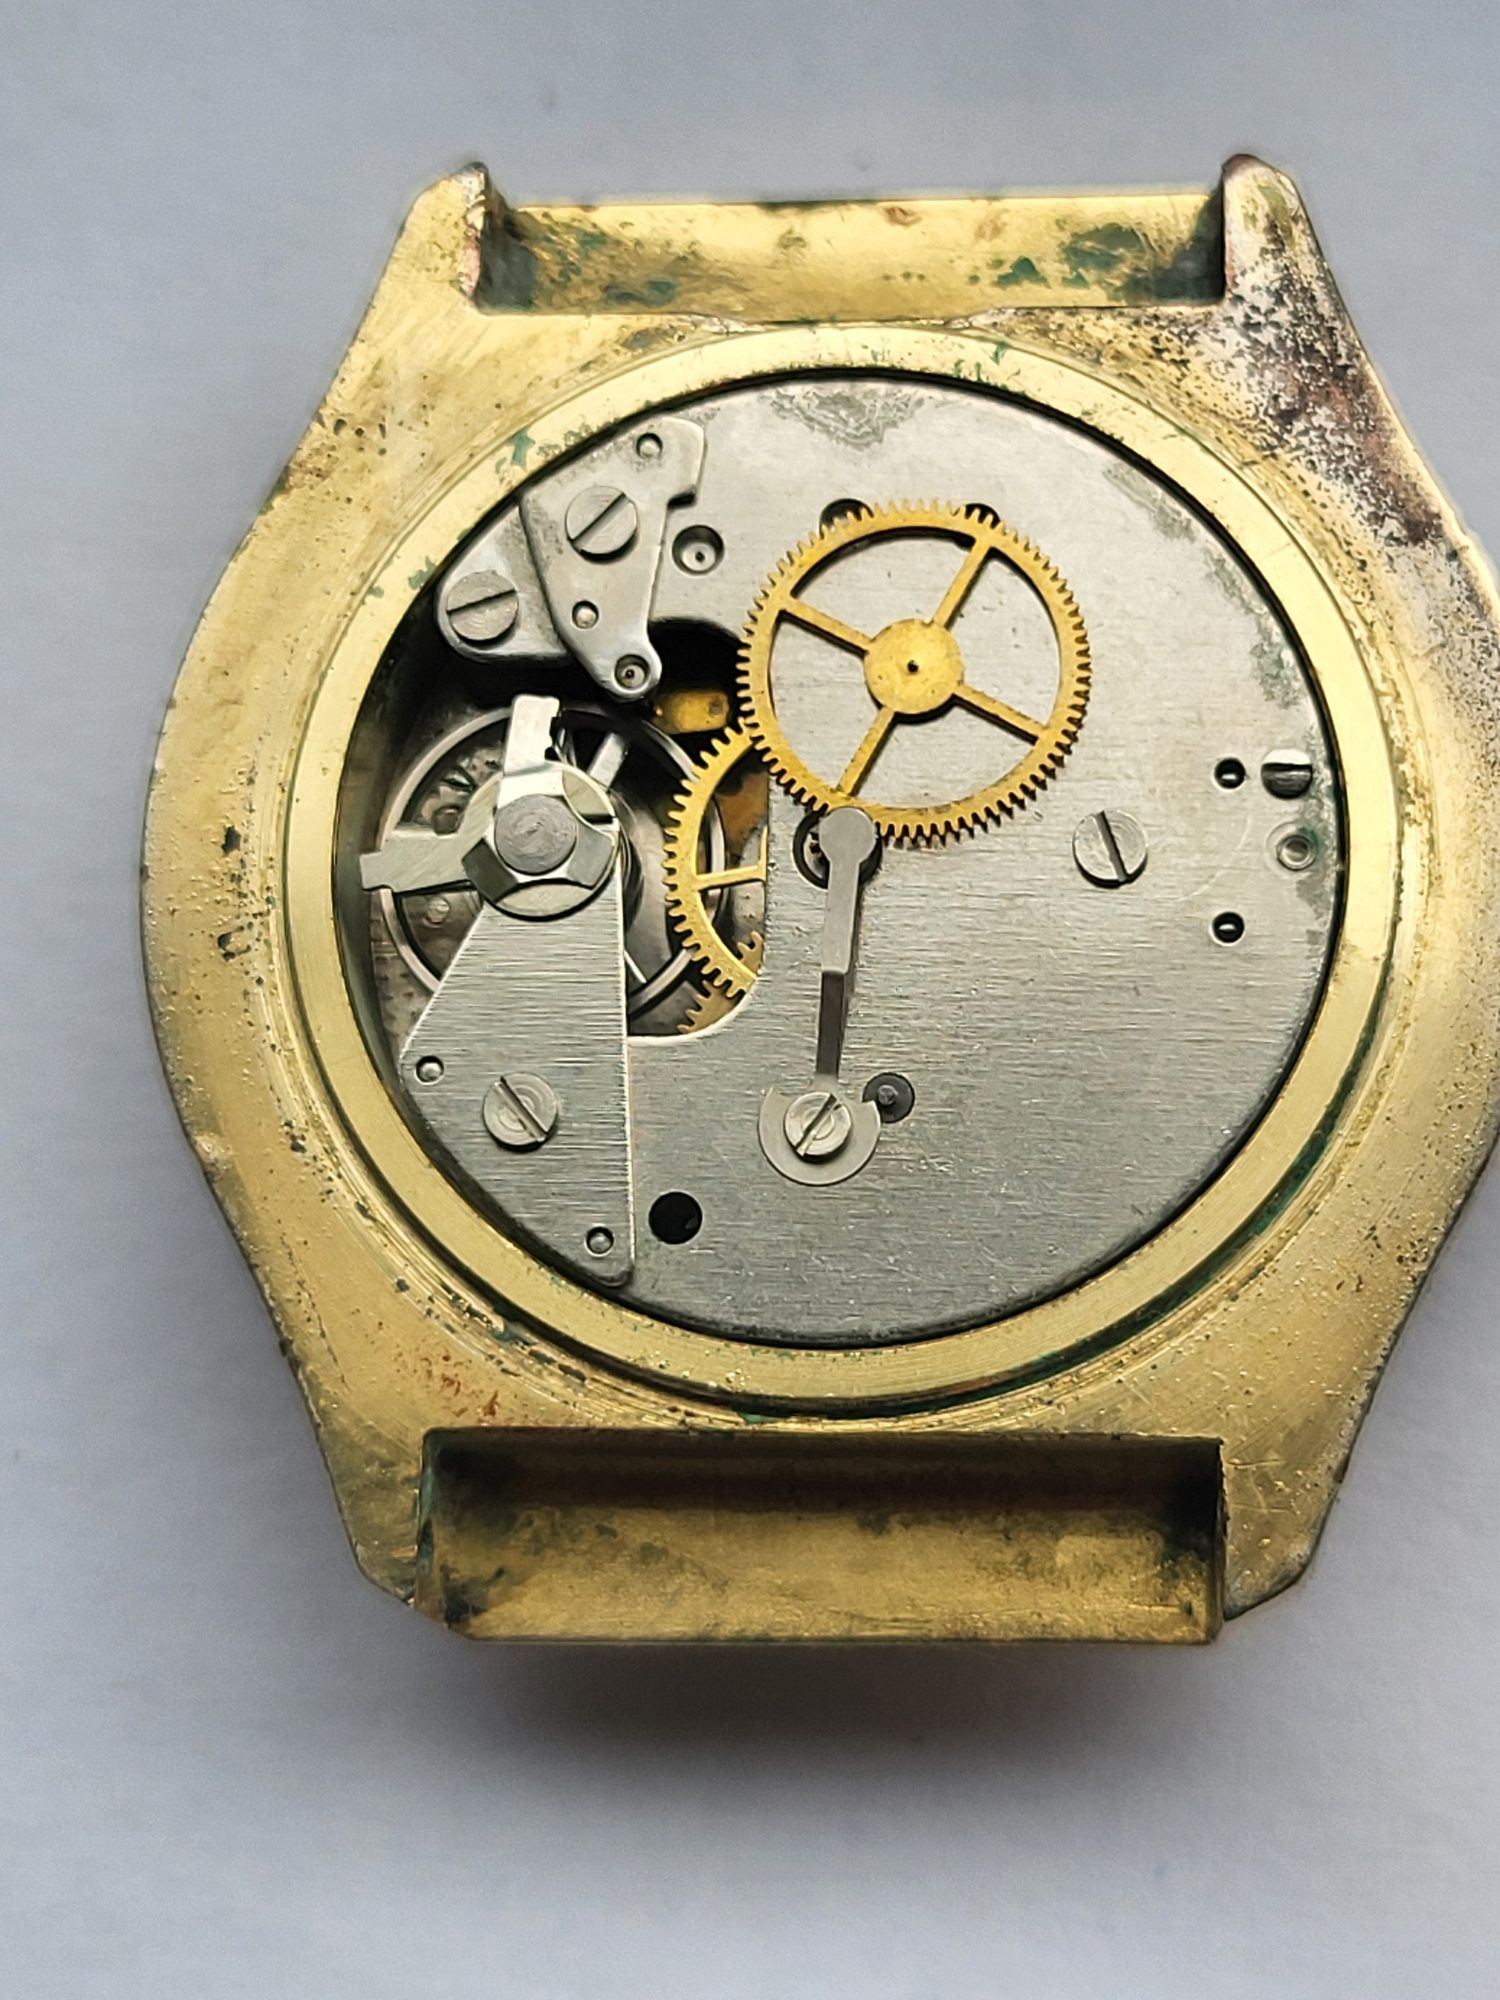 Zegarek Ruhla mechaniczny do naprawy.